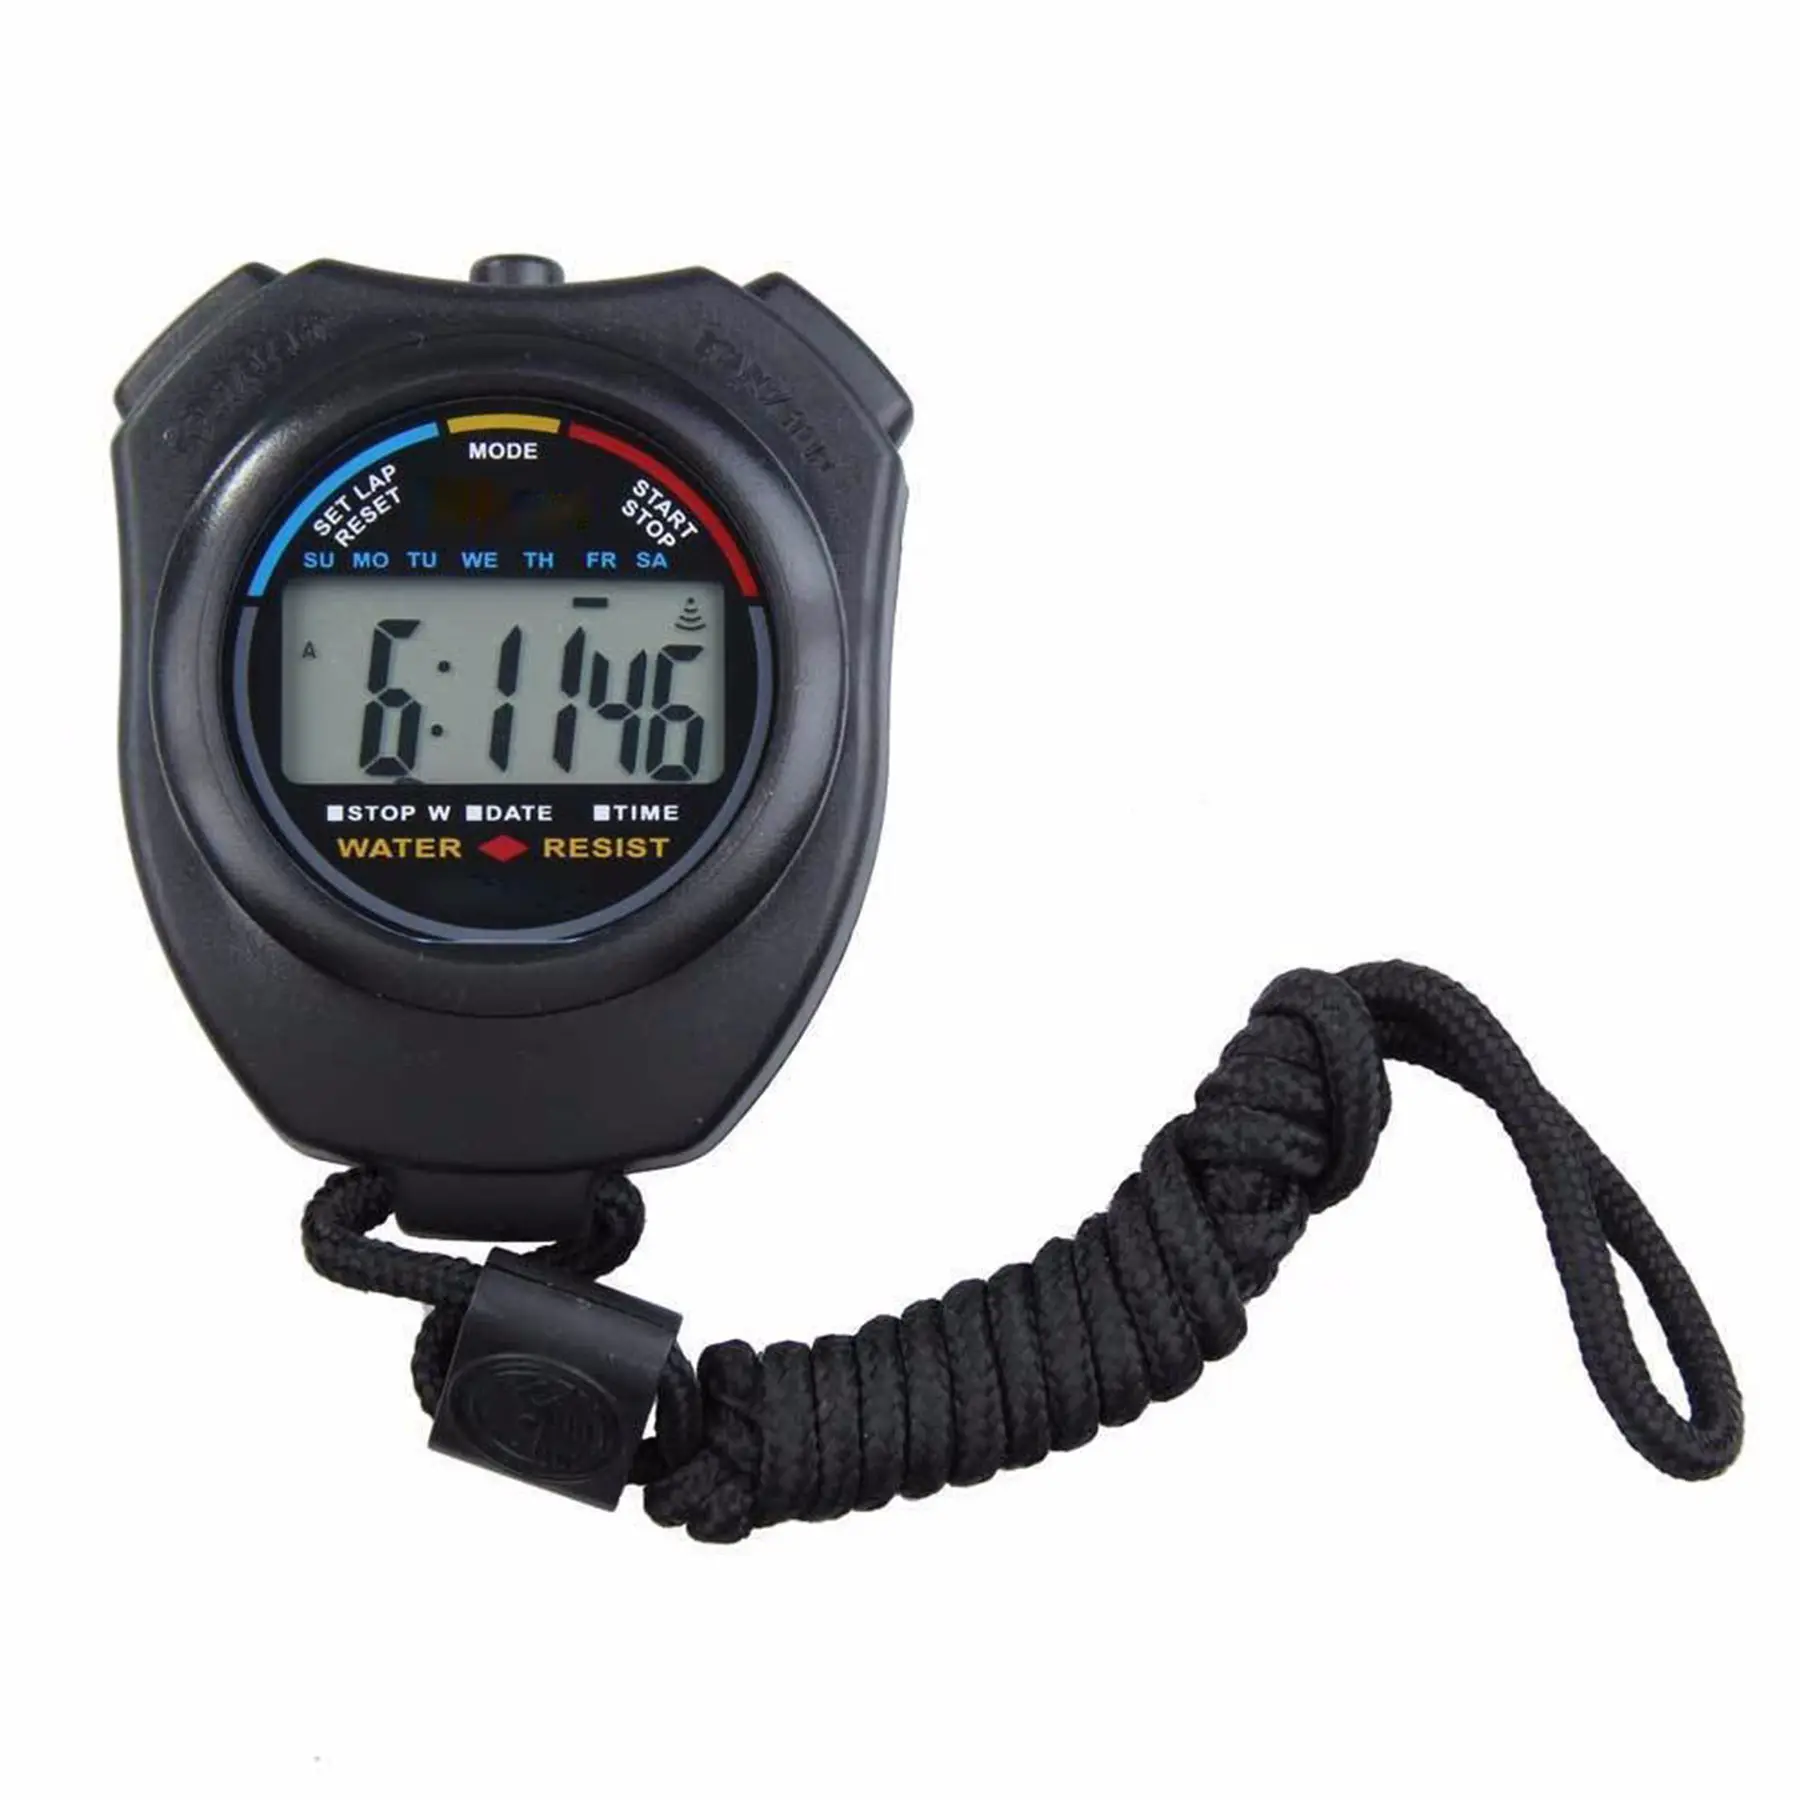 Cronometro sportivo digitale a fila singola Timer cronometro professionale impermeabile cronometro elettronico multifunzione